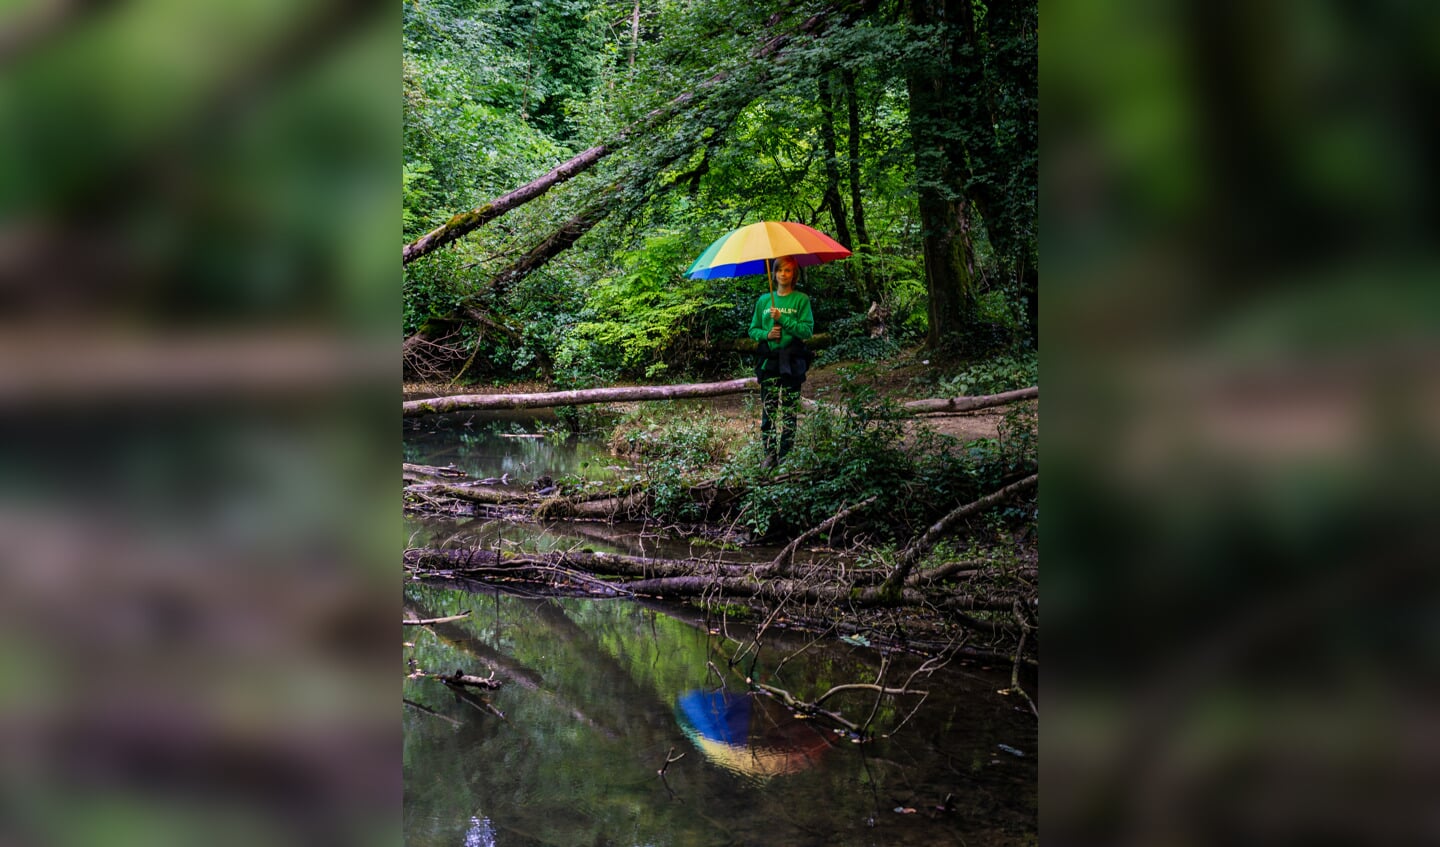 Lekker wandelen in de natuur, ook in Frankrijk was het niet altijd droog. Paraplu mee dus, ook mooi als je even model moet staan voor je vader om de reflectie in het water vast te leggen.